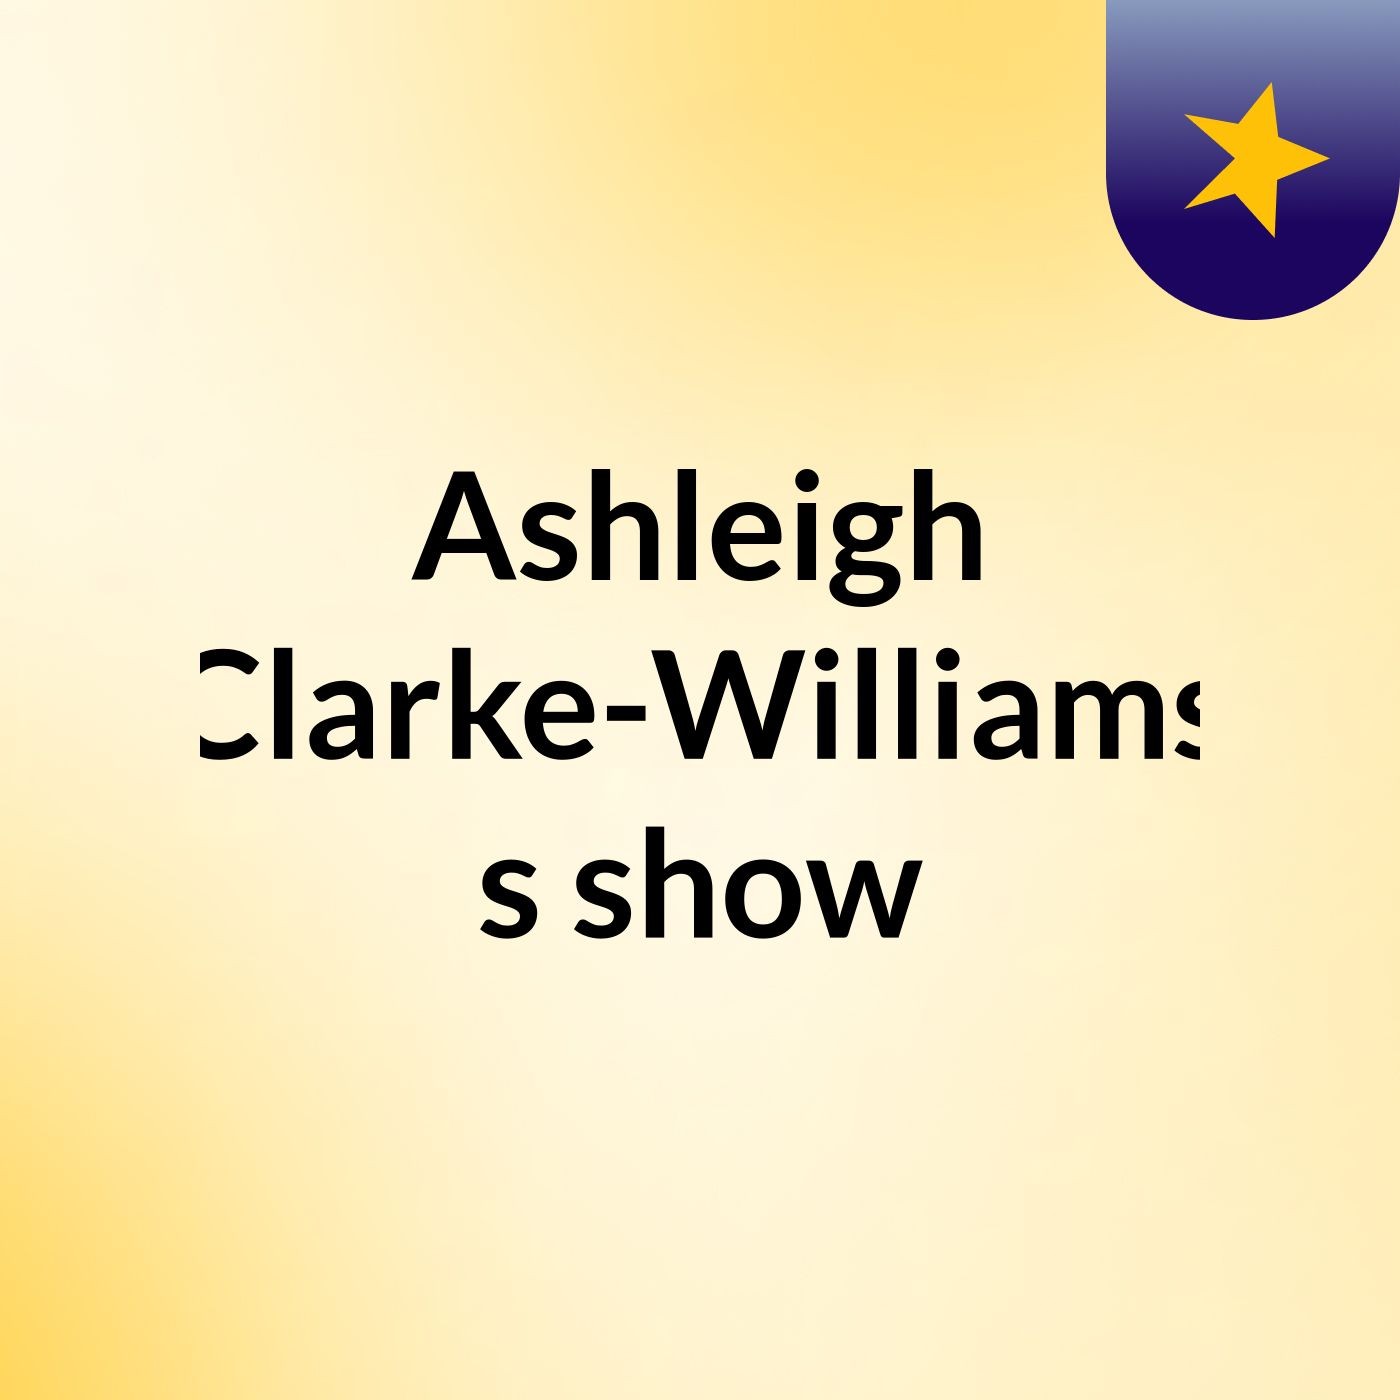 Ashleigh Clarke-Williams's show